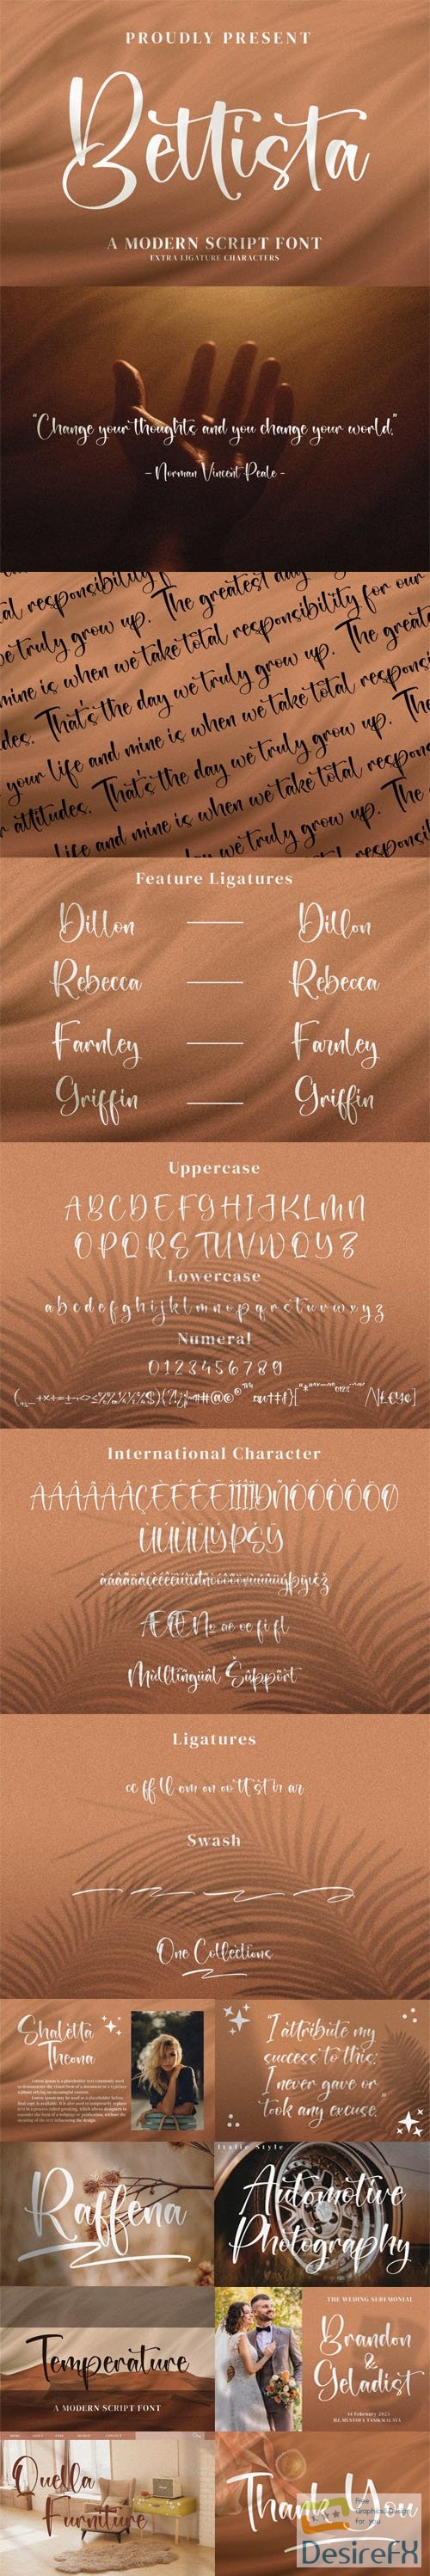 Bettista - Modern Calligraphy Font